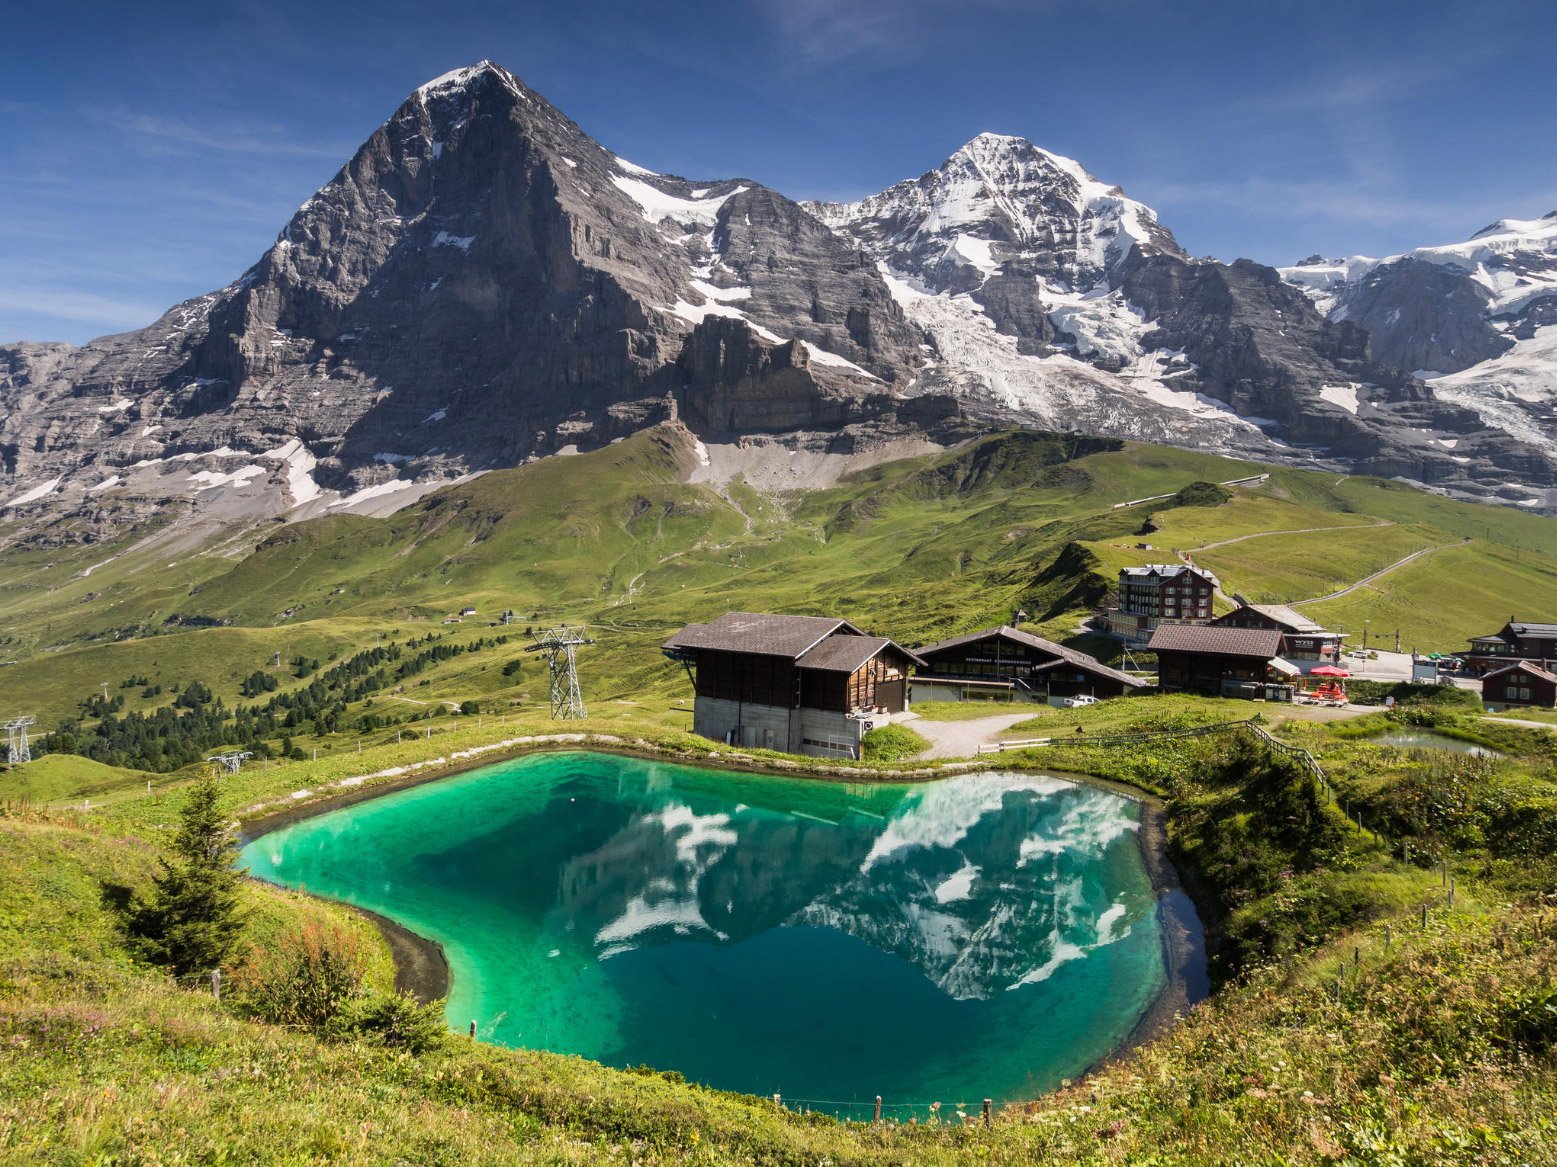 Beautiful place. Эйгер вершина в швейцарских Альпах. Озеро в горах Швейцарии. Гора Эйгер Швейцария домик. . Музей швейцарских Альп Берн.